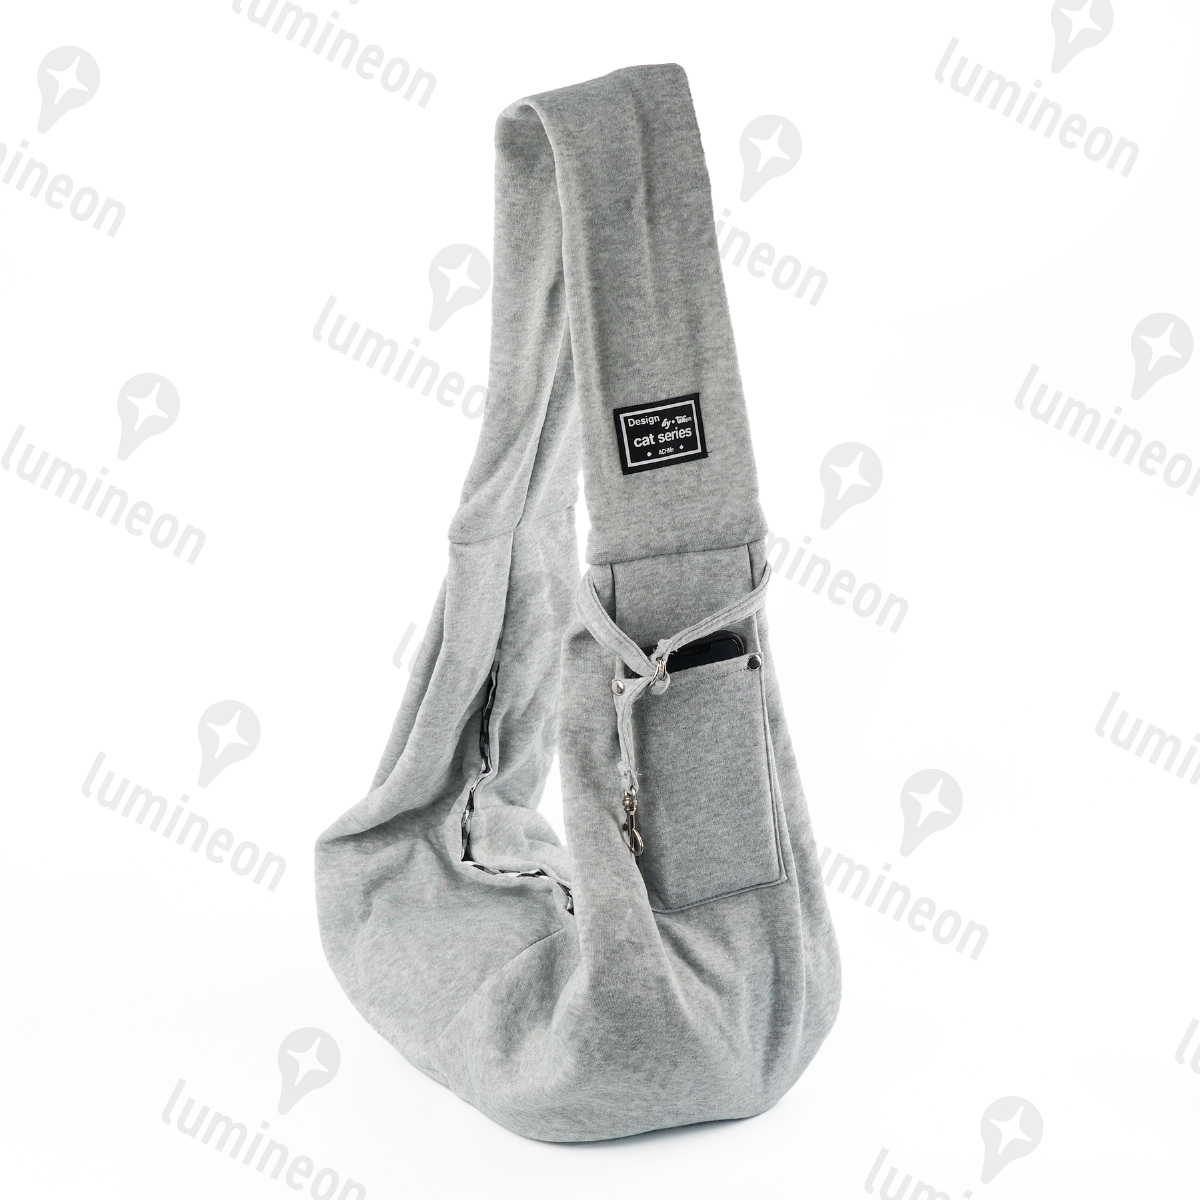  домашнее животное sling дорожная сумка плечо перевозка серый слинг-переноска ... шнурок рюкзак Cart маленький размер собака средний собака задний g061a 2